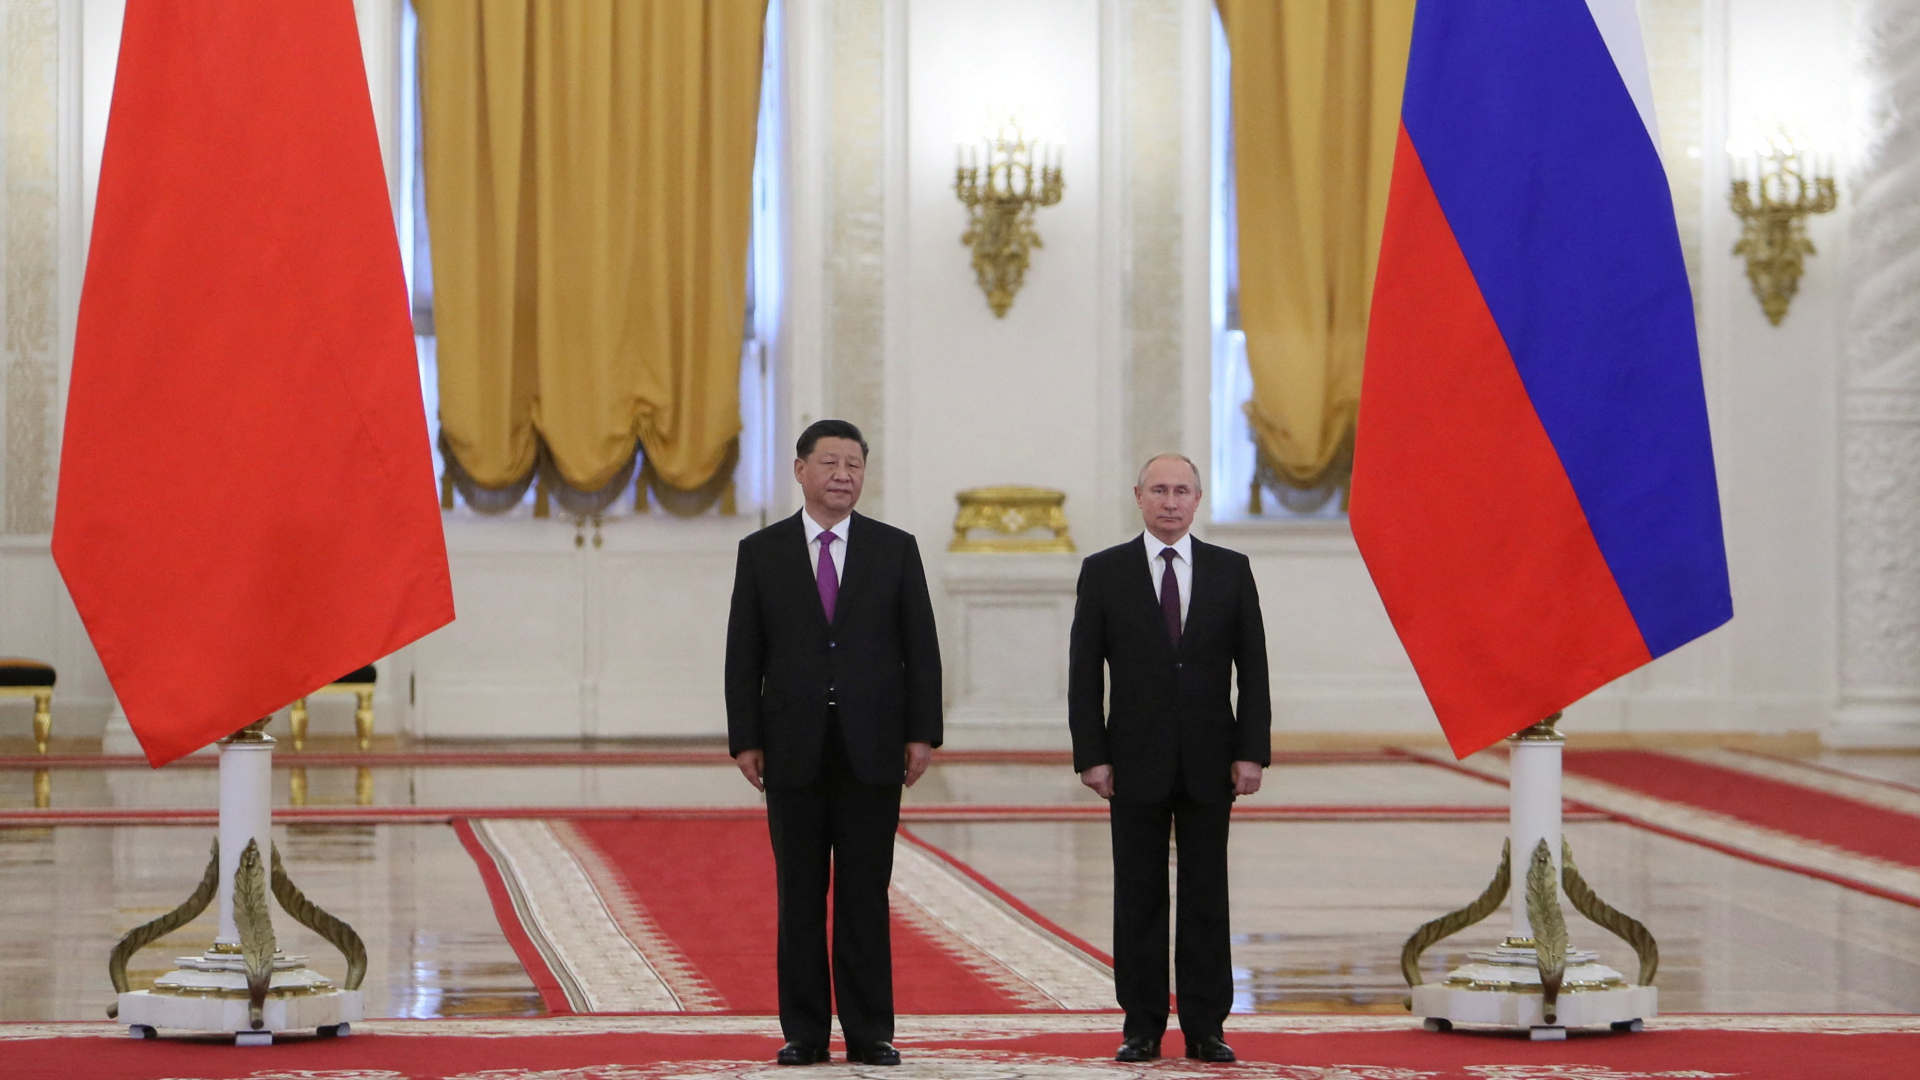 Die Präsidenten Putin und Xi vor Landesflaggen im Moskauer Kreml | REUTERS